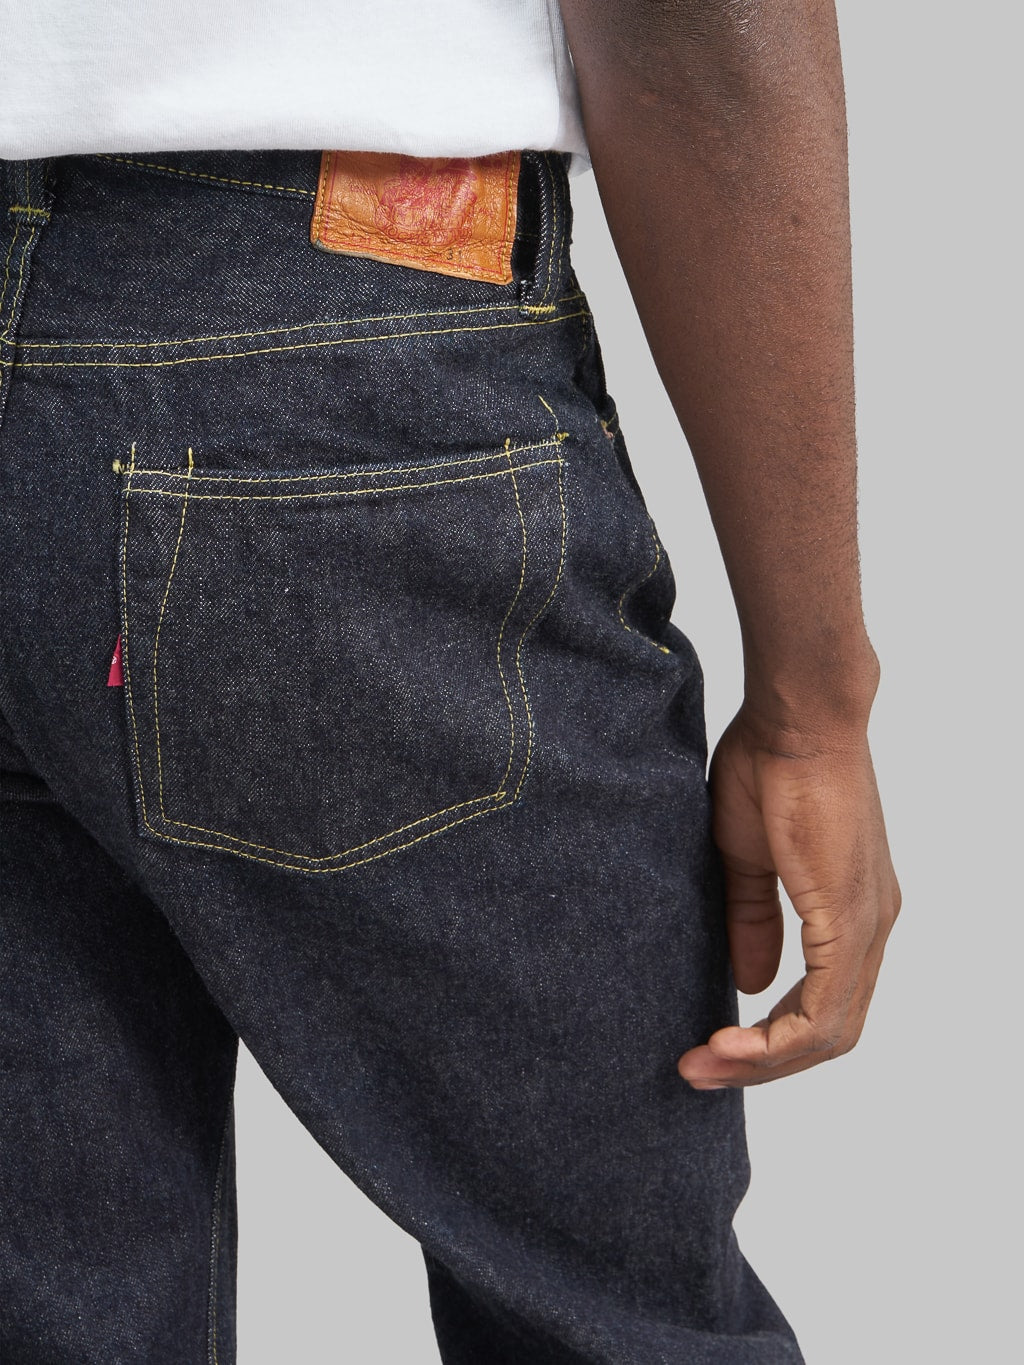 tcb s40s regular straight jeans back pocket